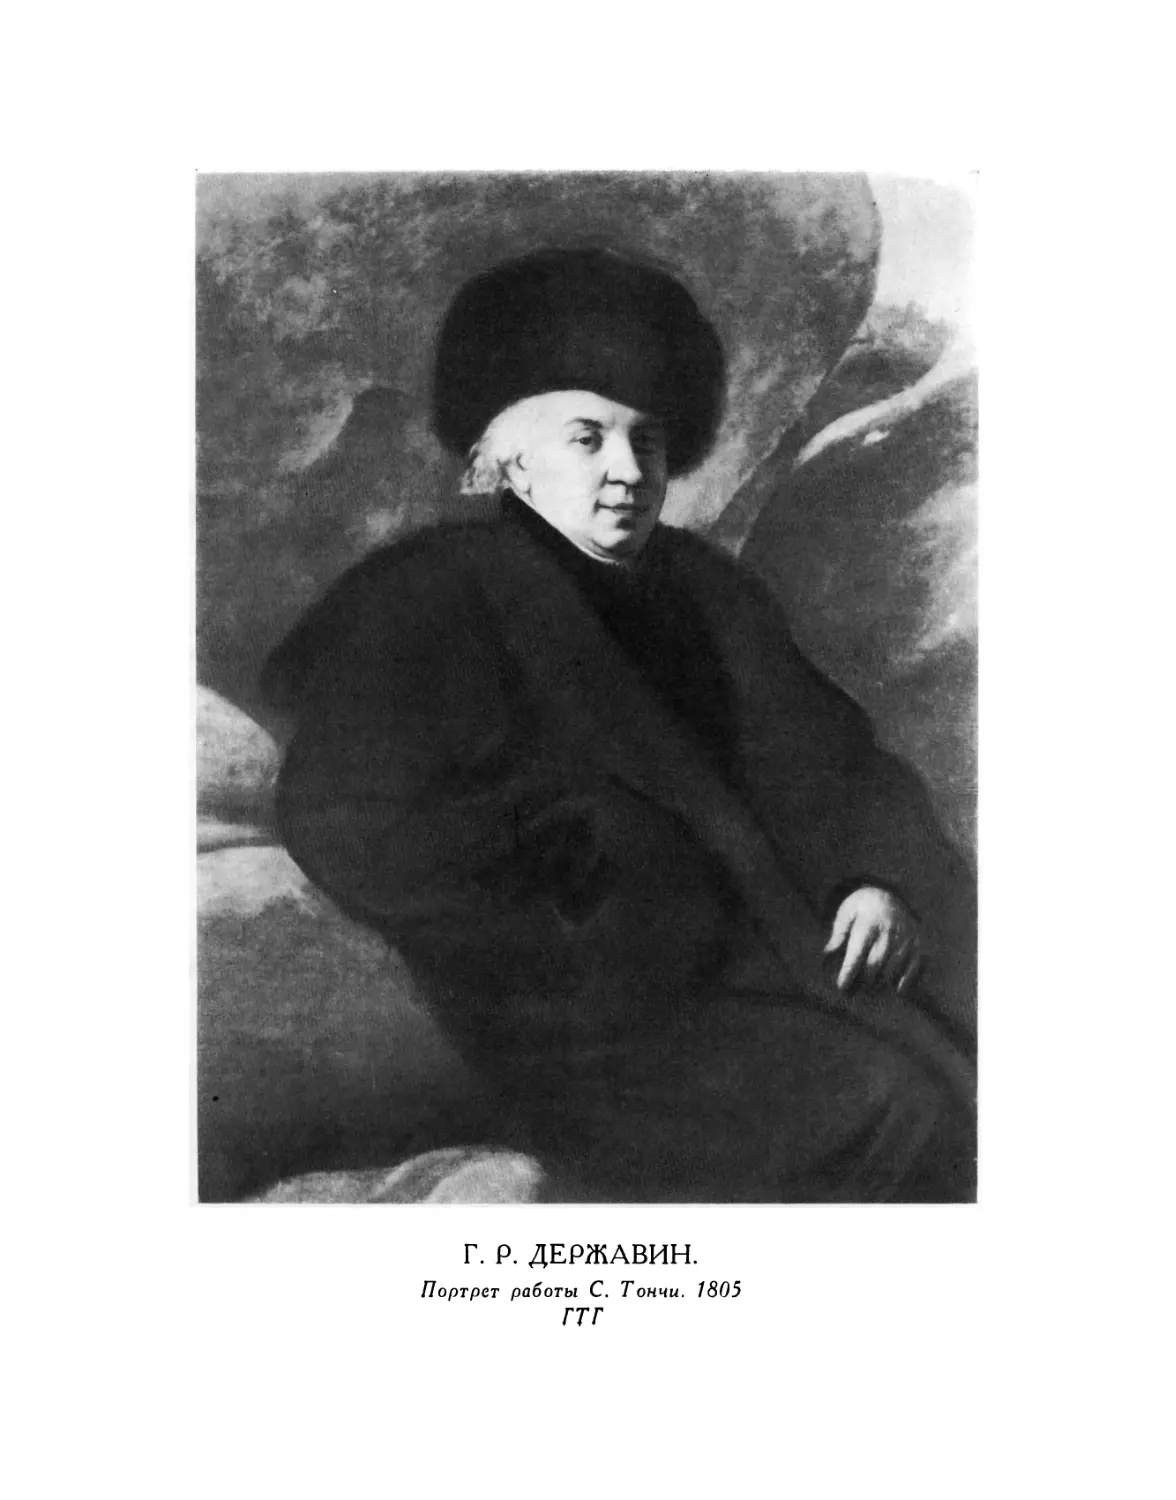 Вклейка. Г. Р. ДЕРЖАВИН. Портрет работы С. Тончи. 1805